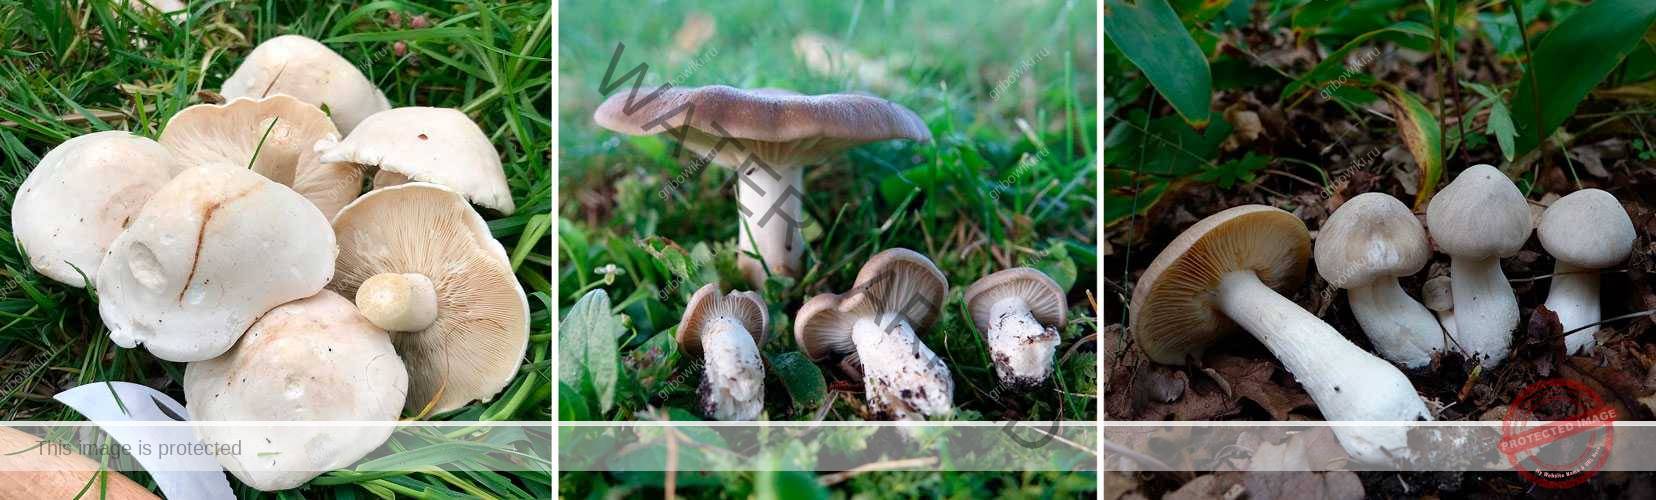 Энтолома синеватая — описание гриба, где растет, похожие виды, фото